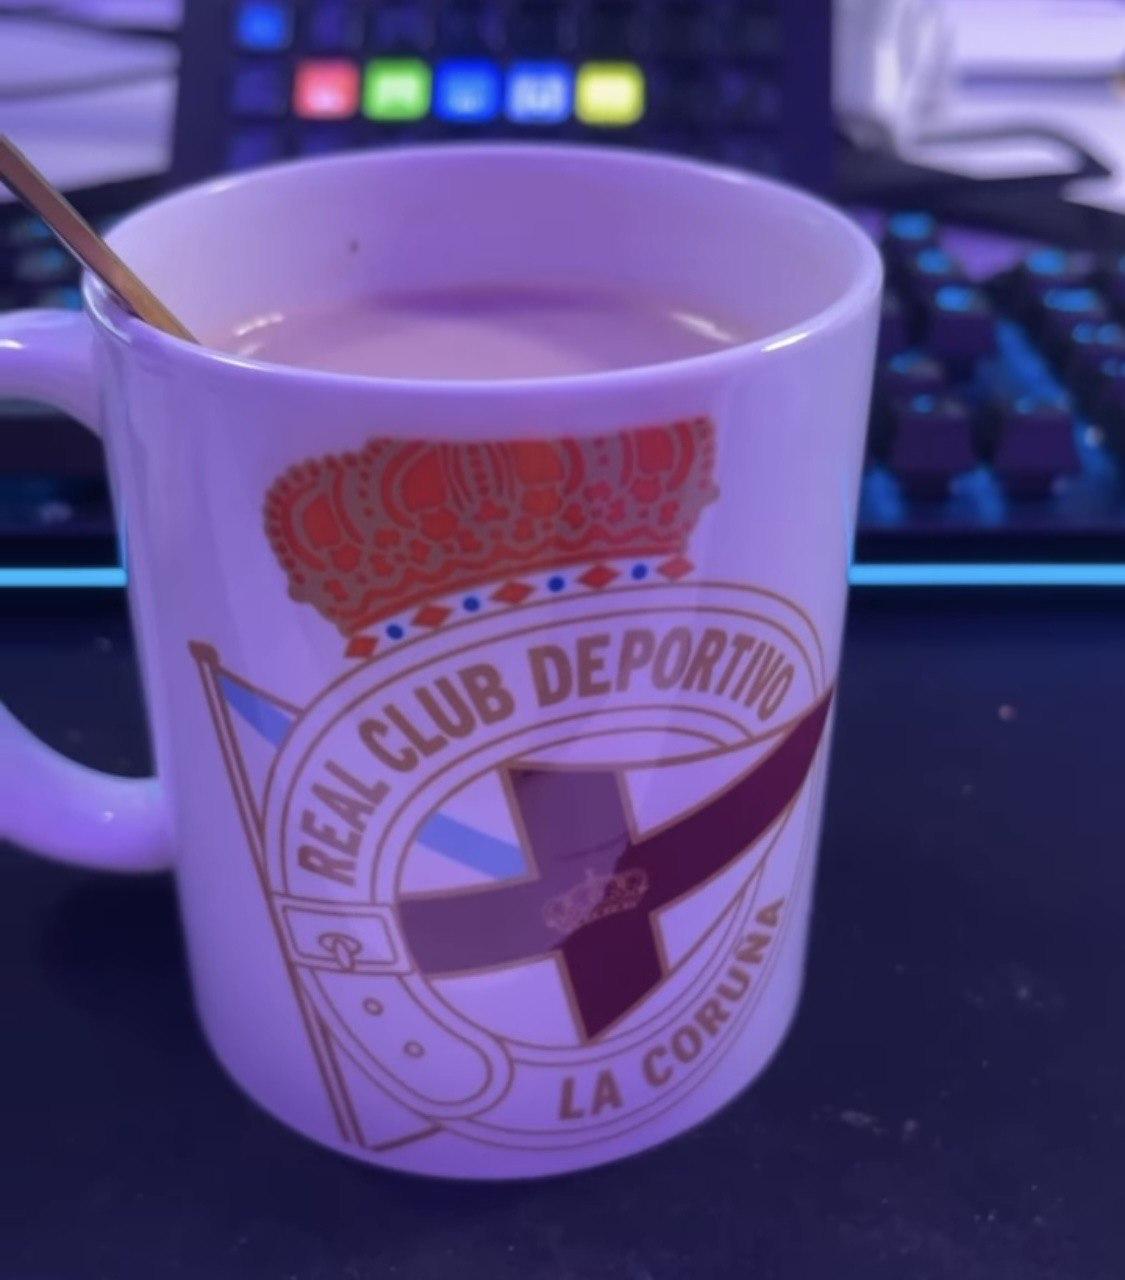 La taza que ha mostrado Ibai Llanos en Instagram.